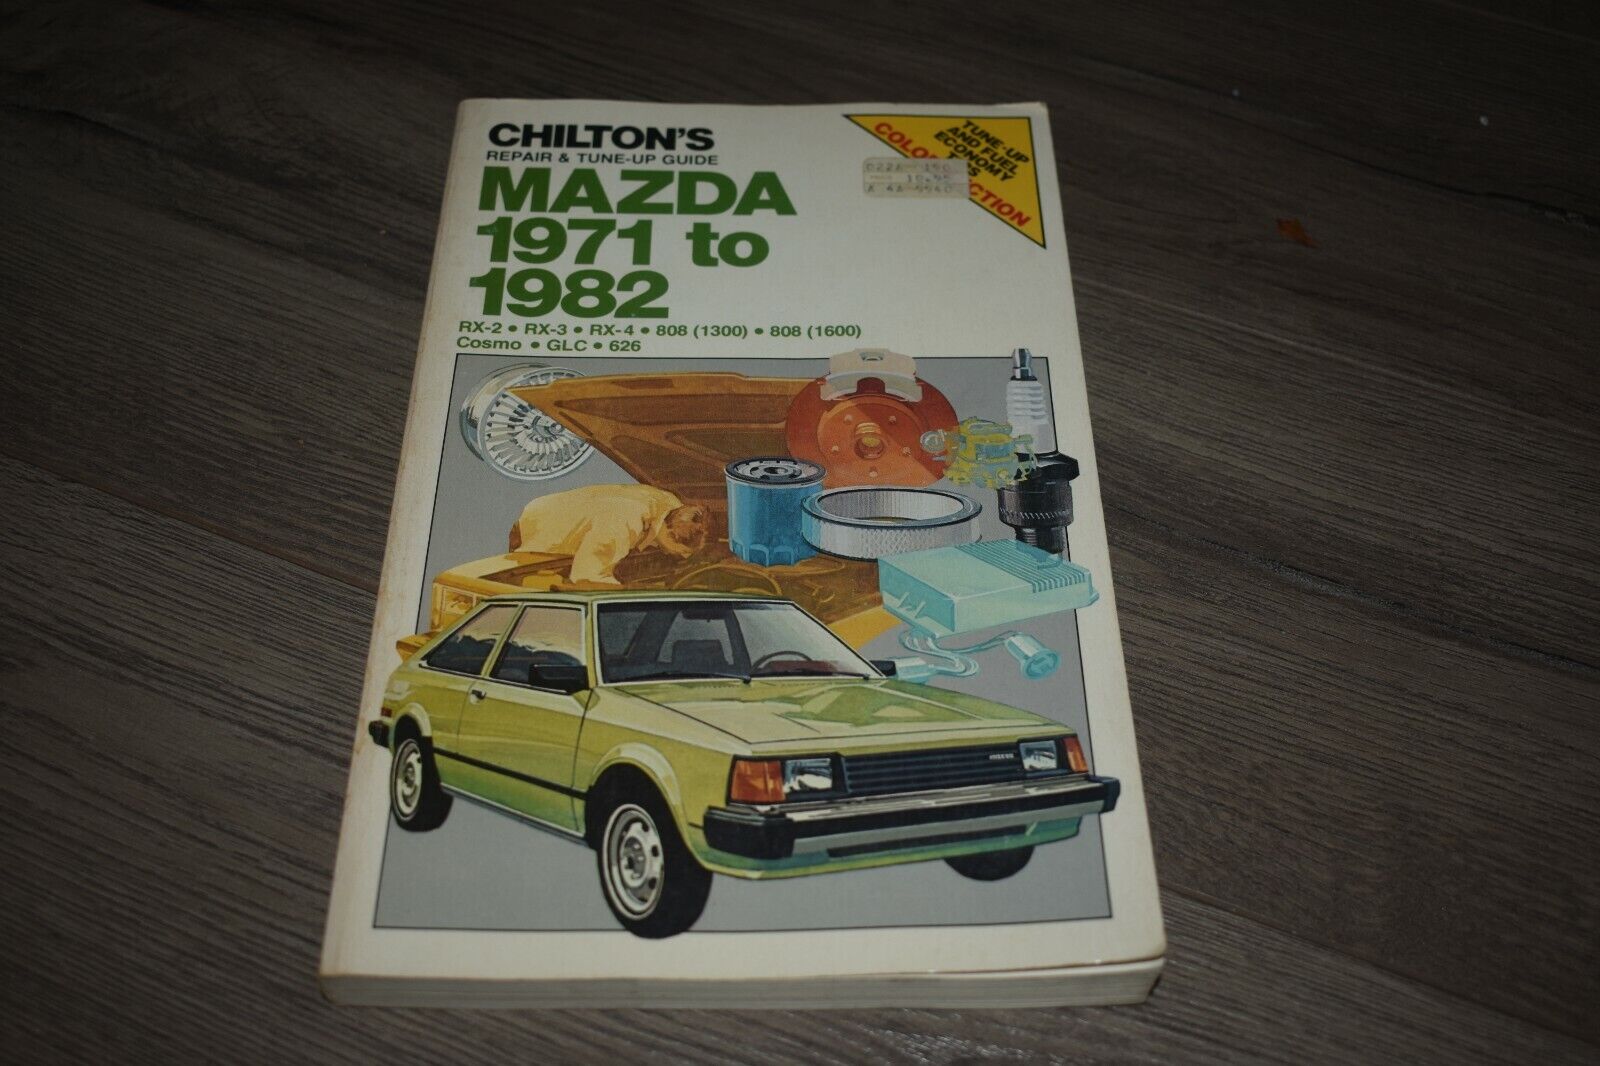 1971-82 Mazda RX-2 RX-3 RX-4 808 Cosmo GLC 626 repair & tune-up manual Chilton\'s